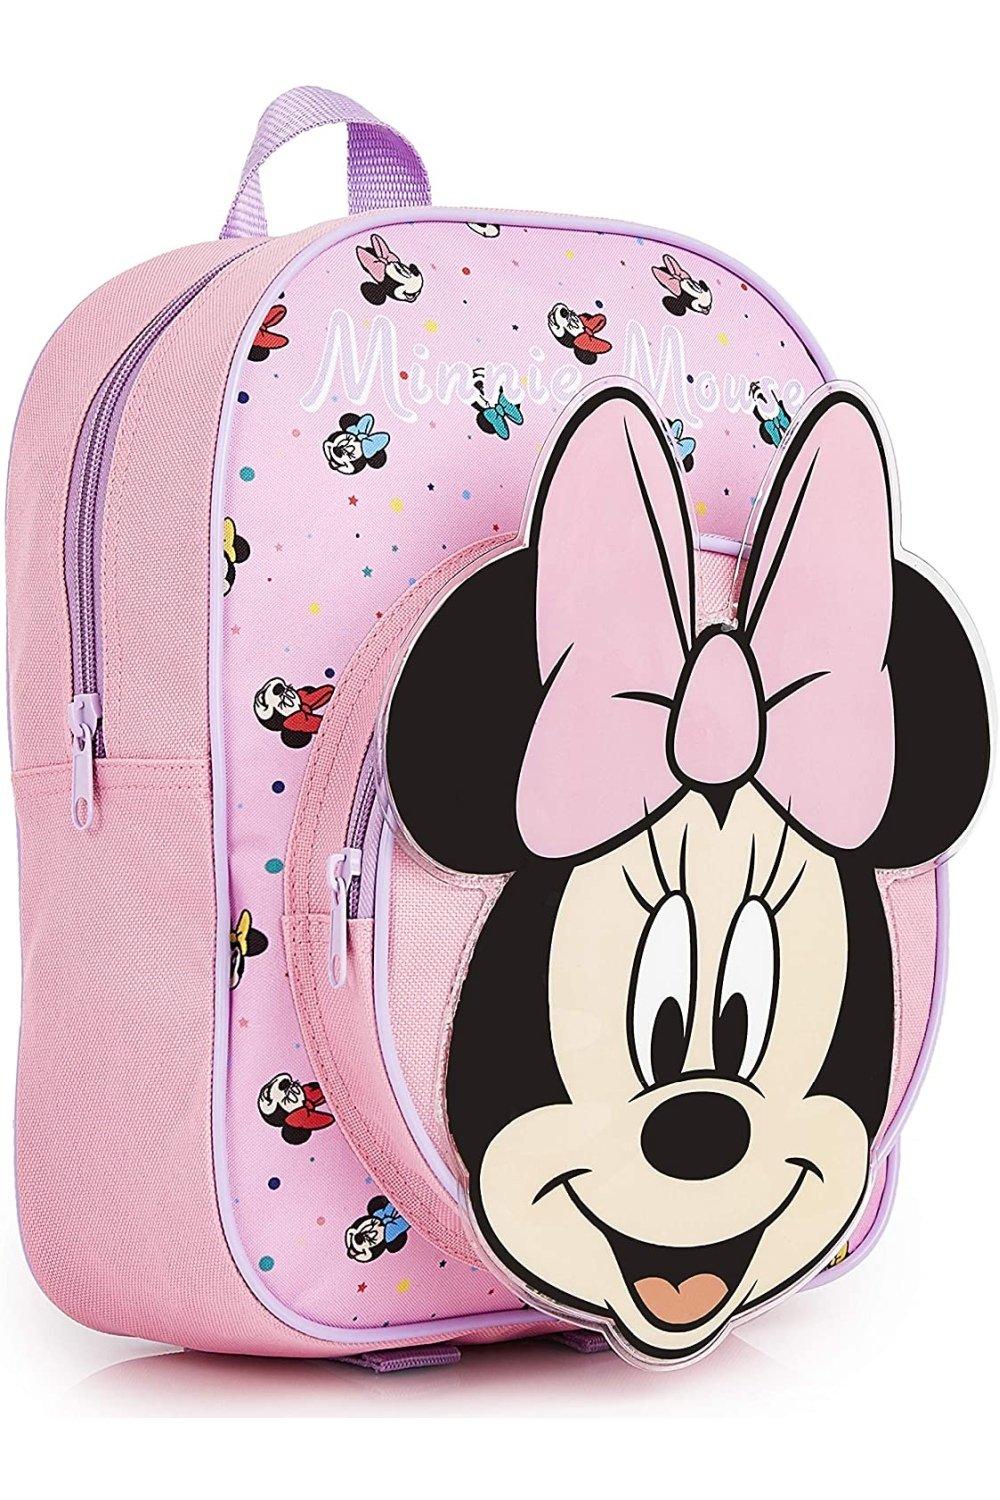 Школьная сумка Минни Маус Disney, розовый школьная сумка минни маус disney розовый